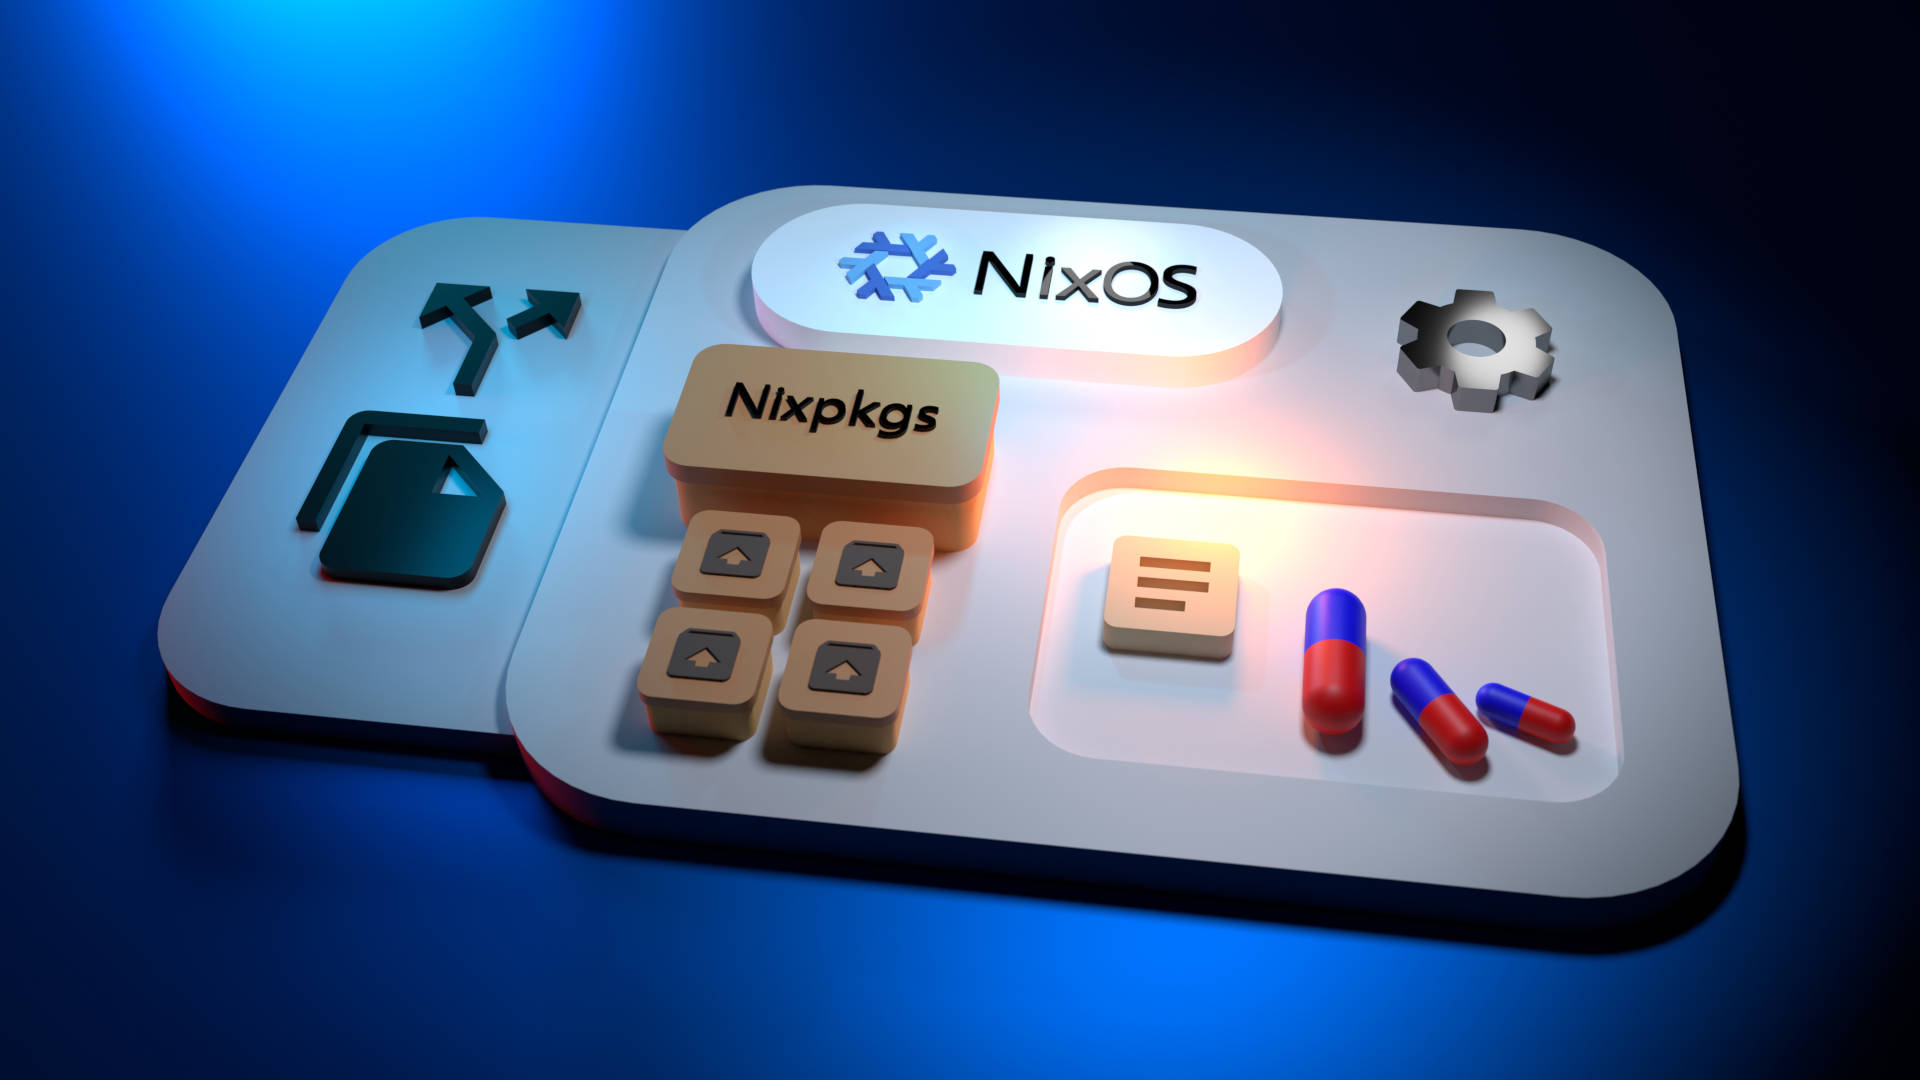 Nixos HM generic image